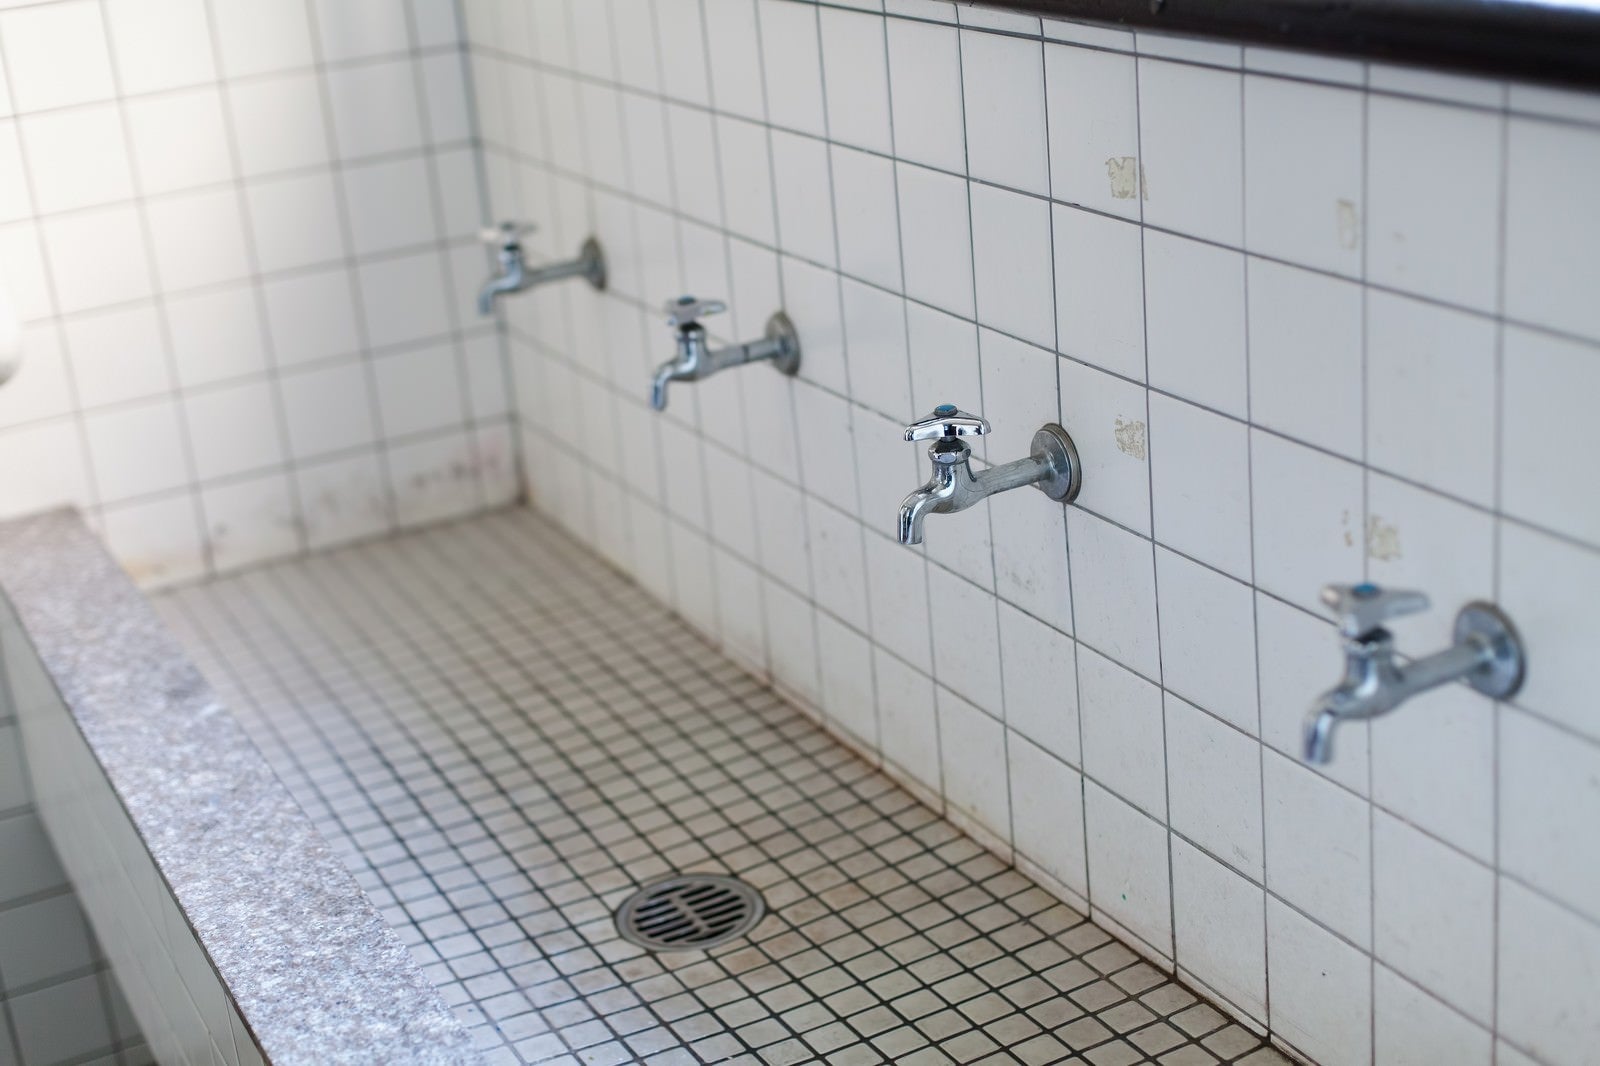 「学校の手洗い場」の写真